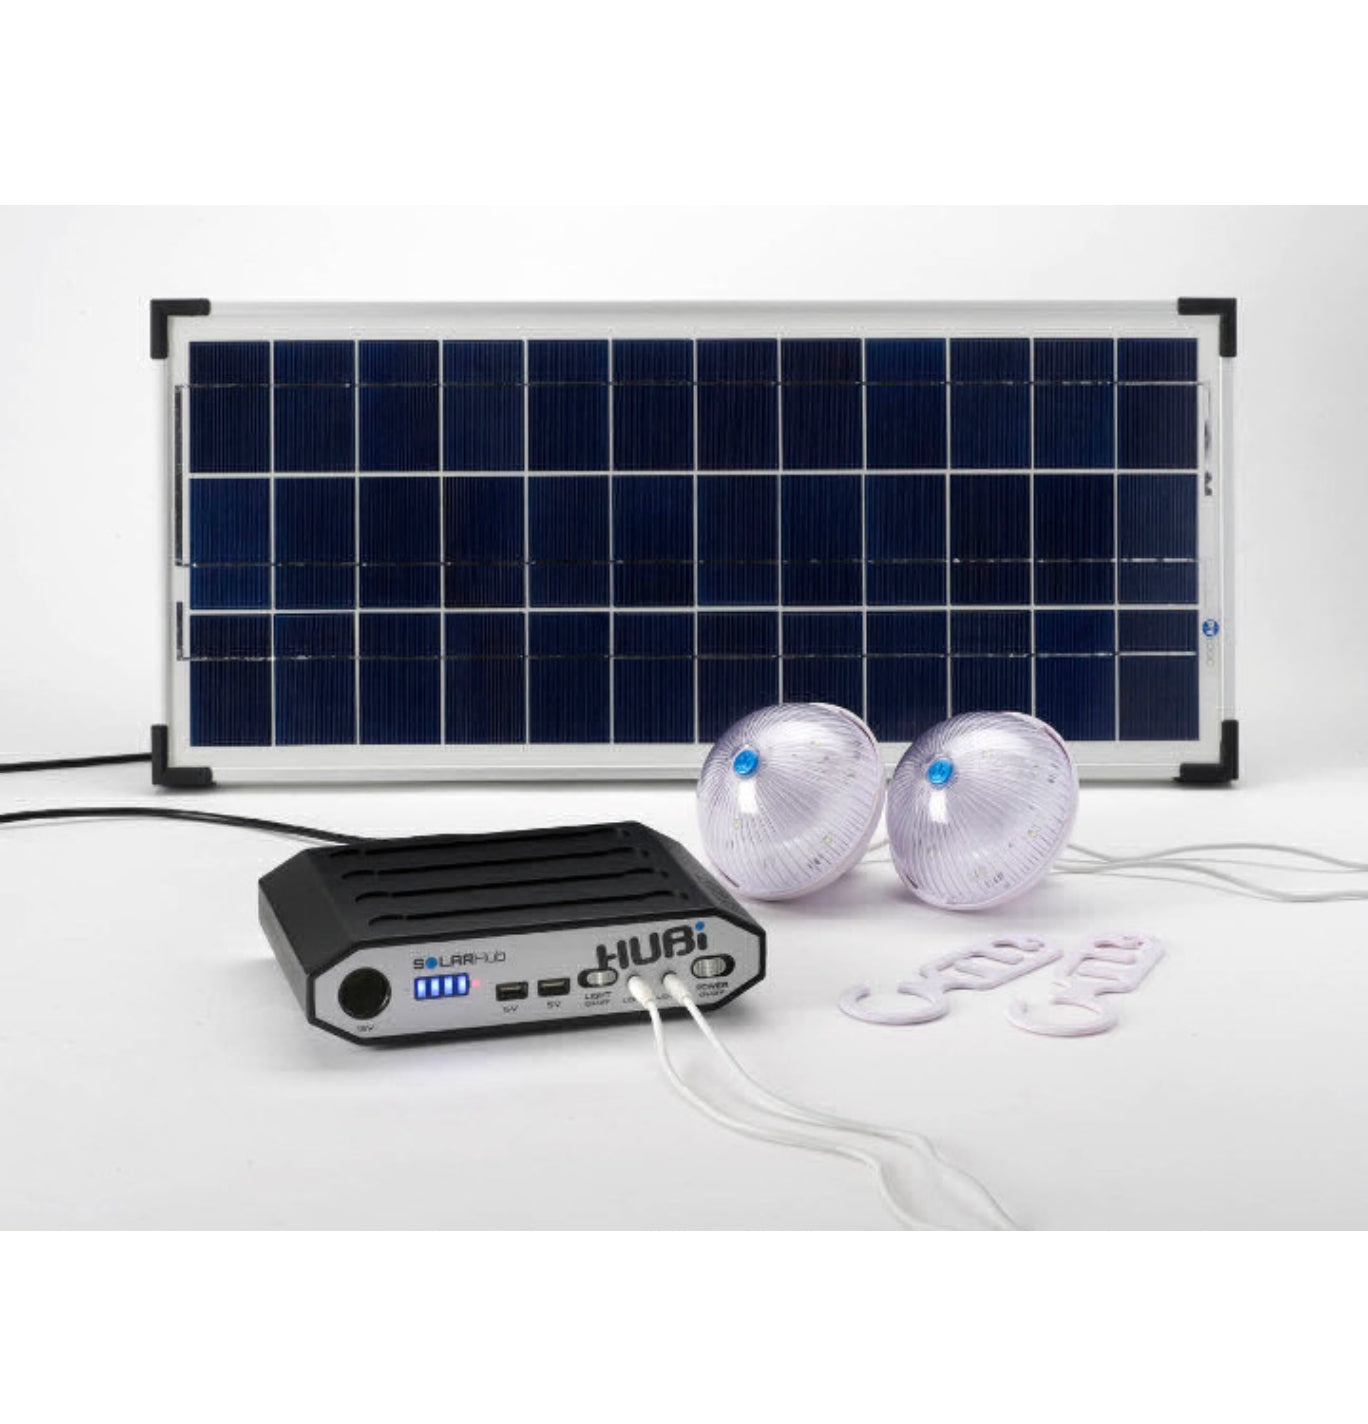 HUBi Go 10k Solar & Lighting Power Kit Image